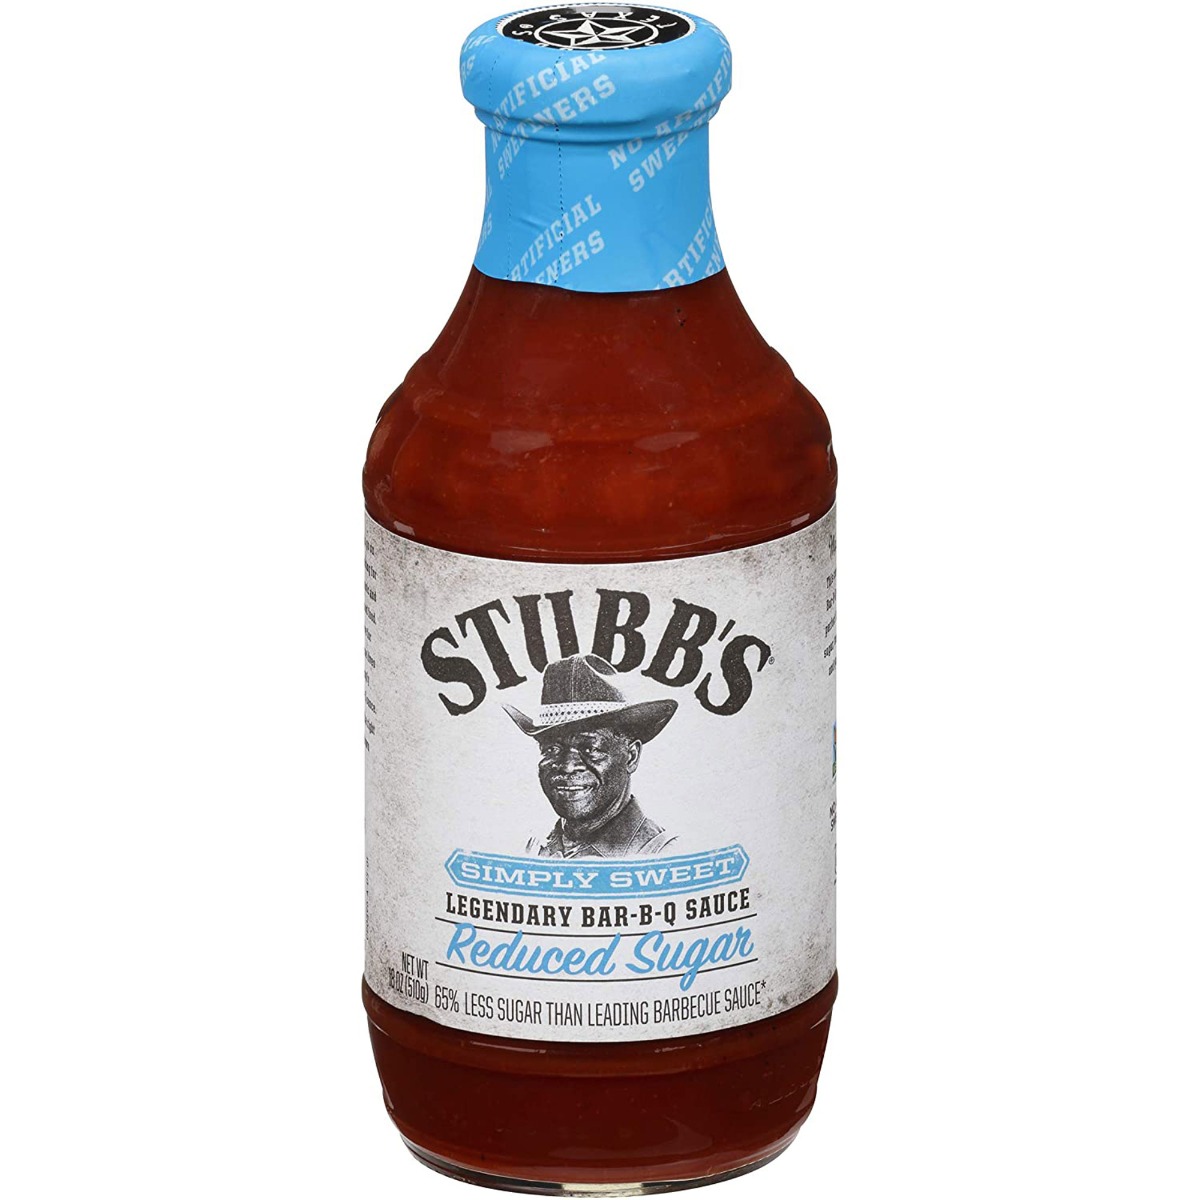 Σάλτσα Simply Sweet Legendary Bar-B-Q Sauce (Reduced Sugar), 510g - Stubb's®️